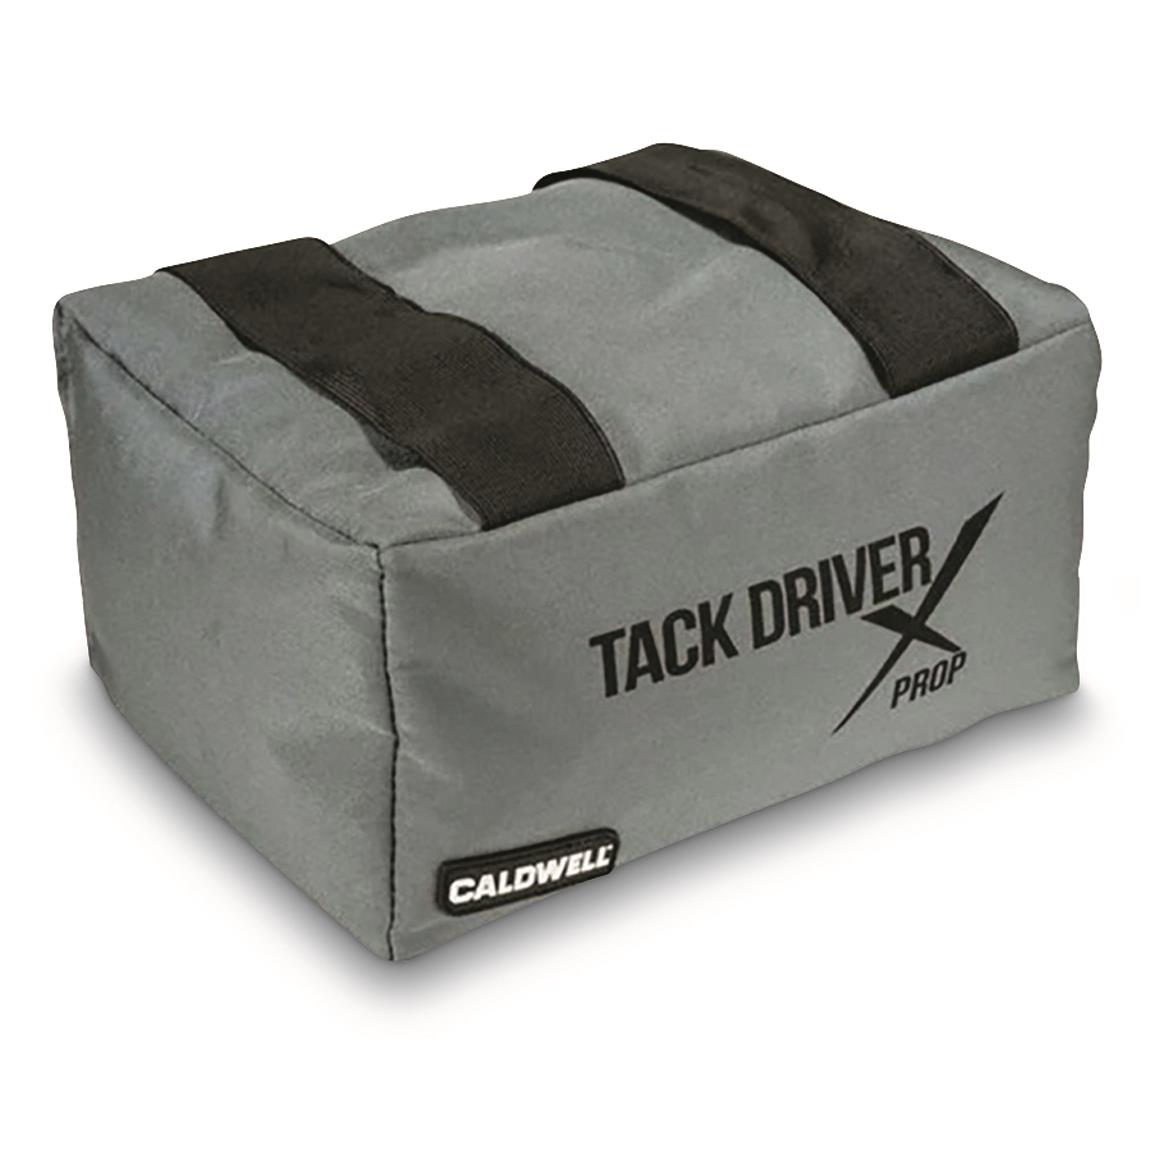 Caldwell Tack Driver Prop Bag